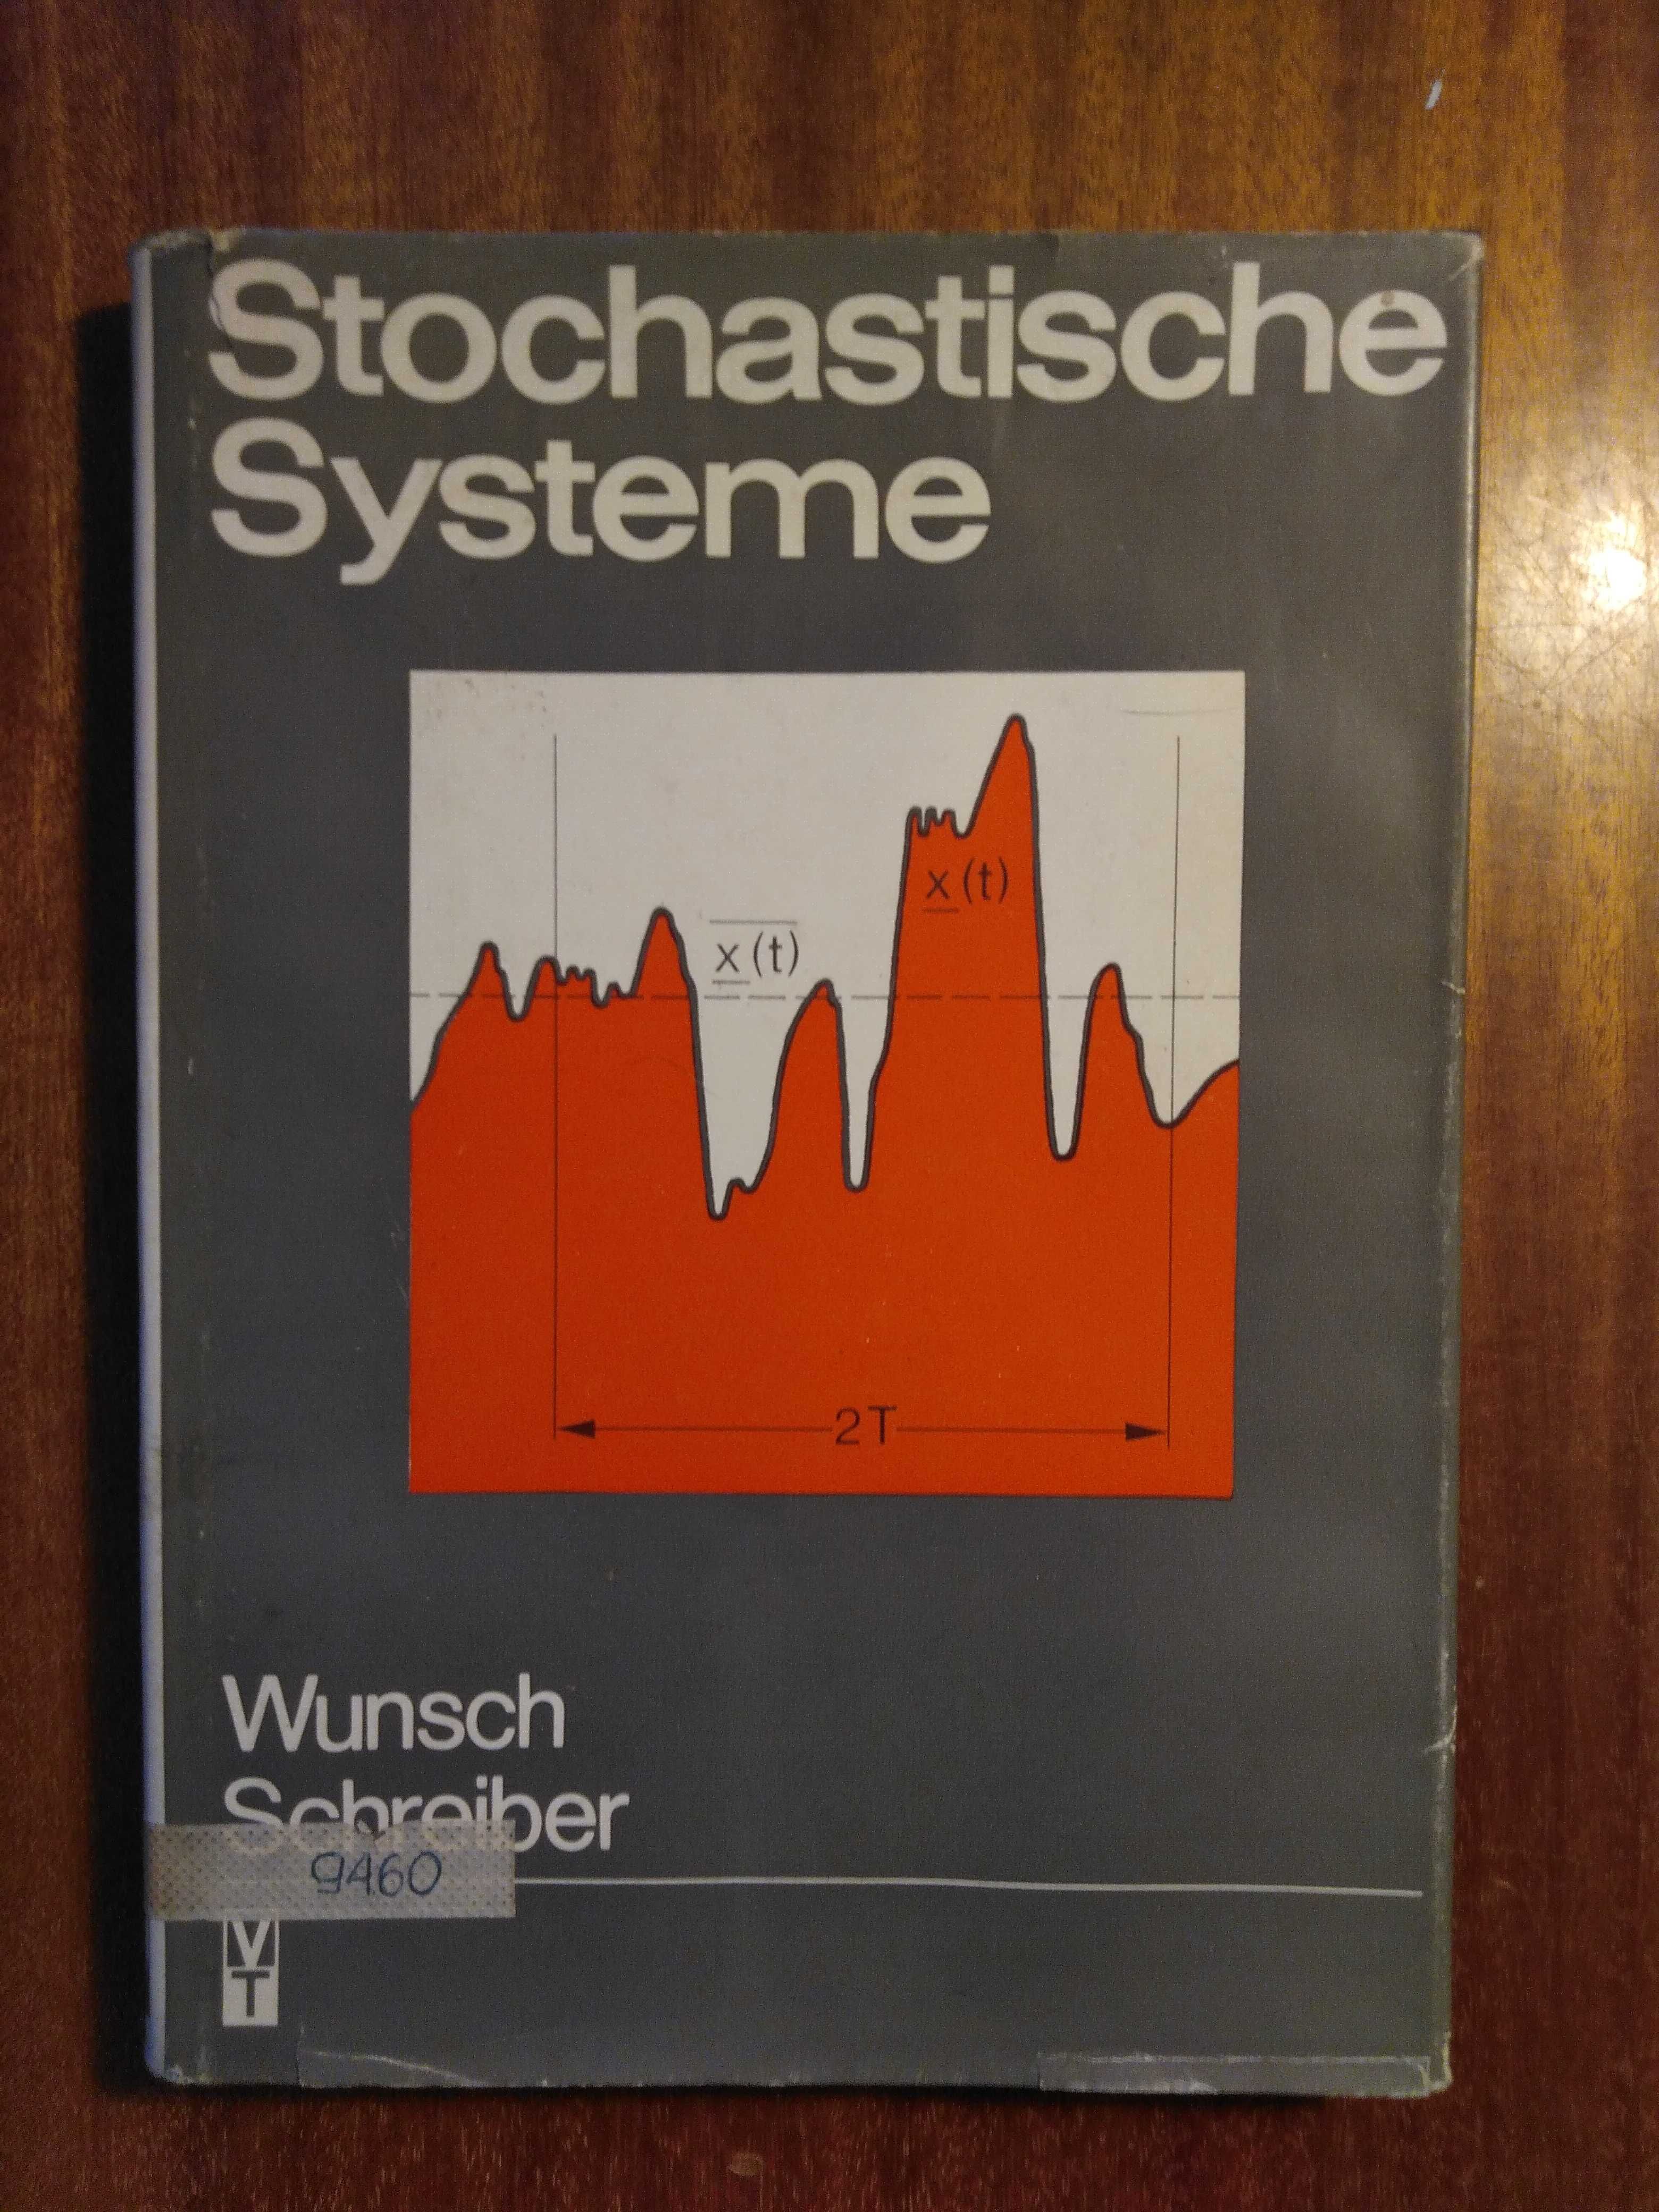 Stochastiche Systeme